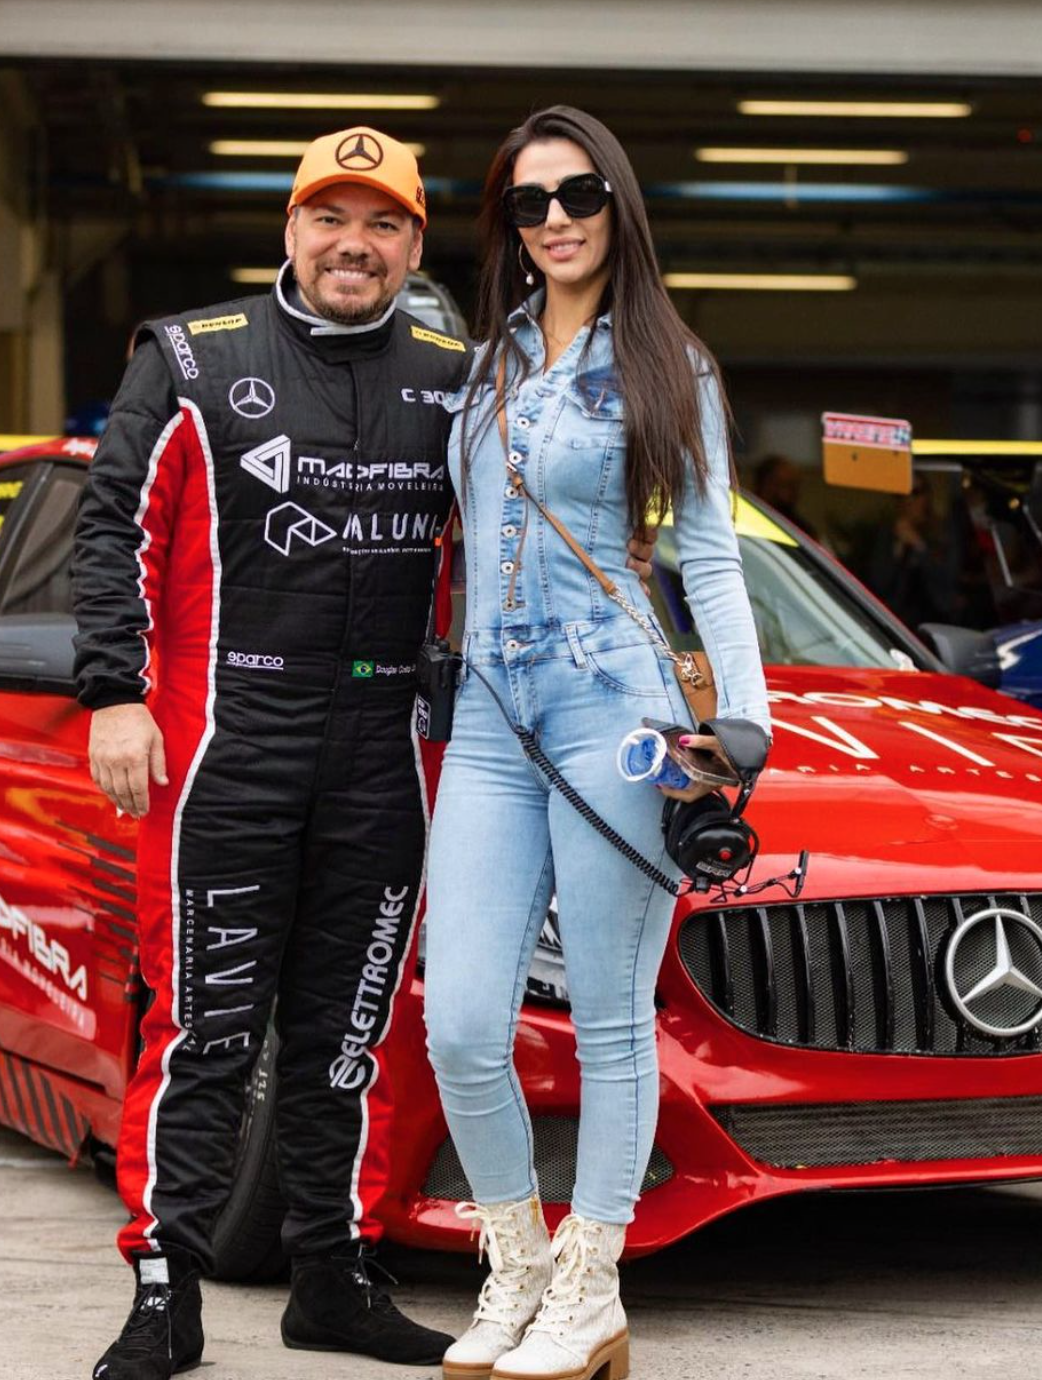 Autorennfahrer Douglas Costa mit seiner Verlobten Mariana Giordana